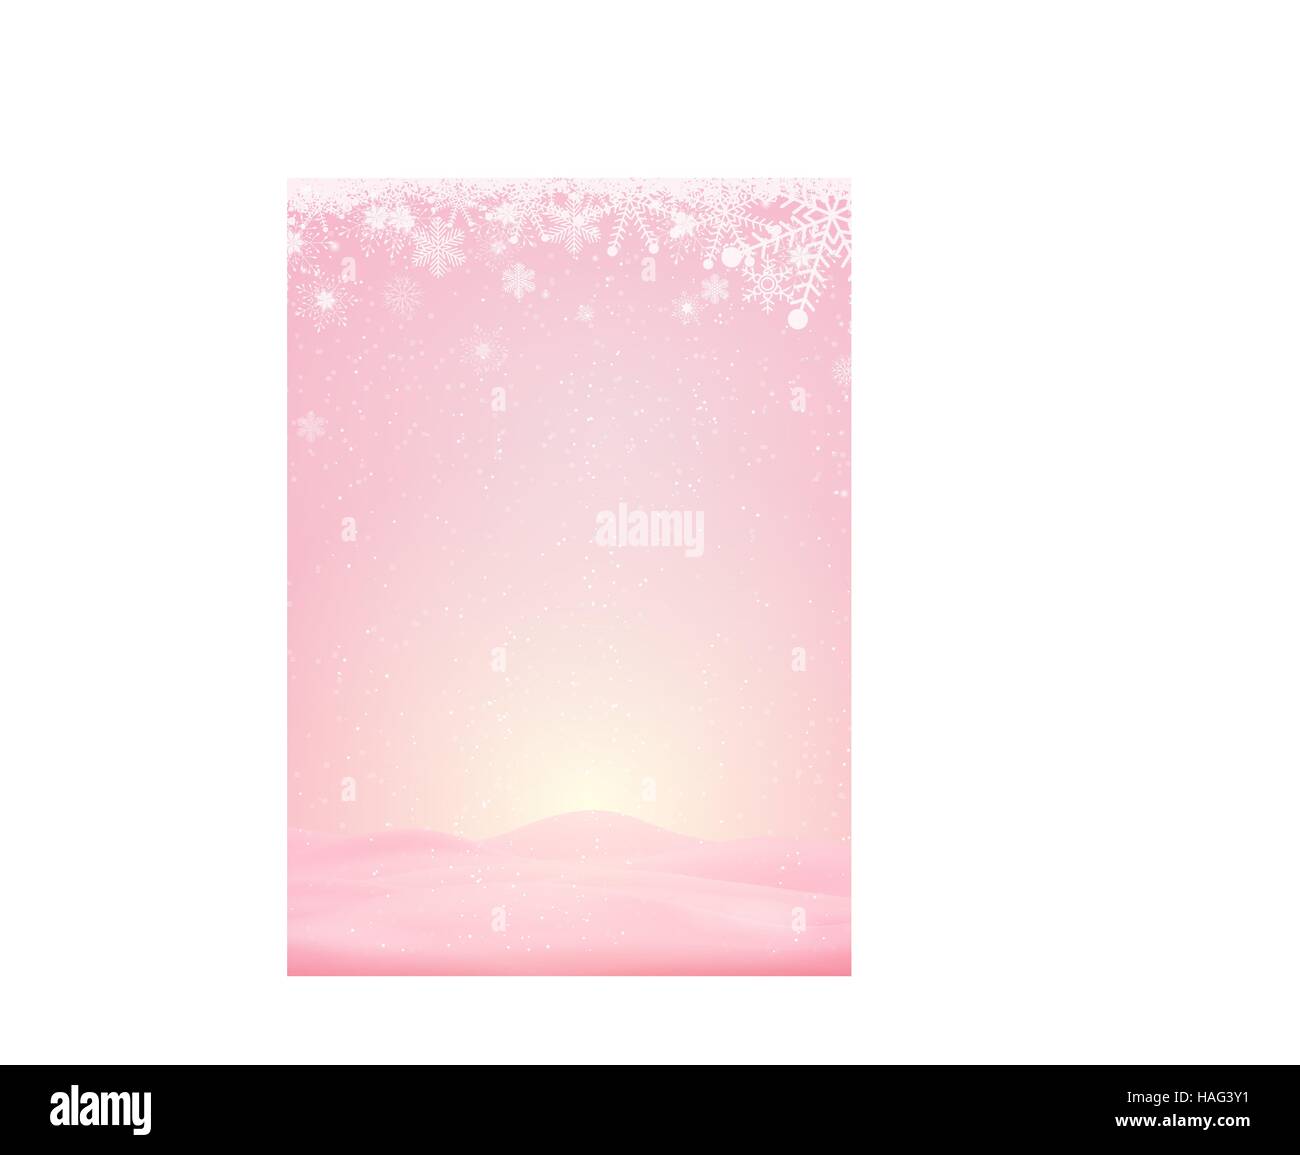 Rosa Winter Hintergrund mit Schnee und Schneeflocken im Vektor-format Stock Vektor